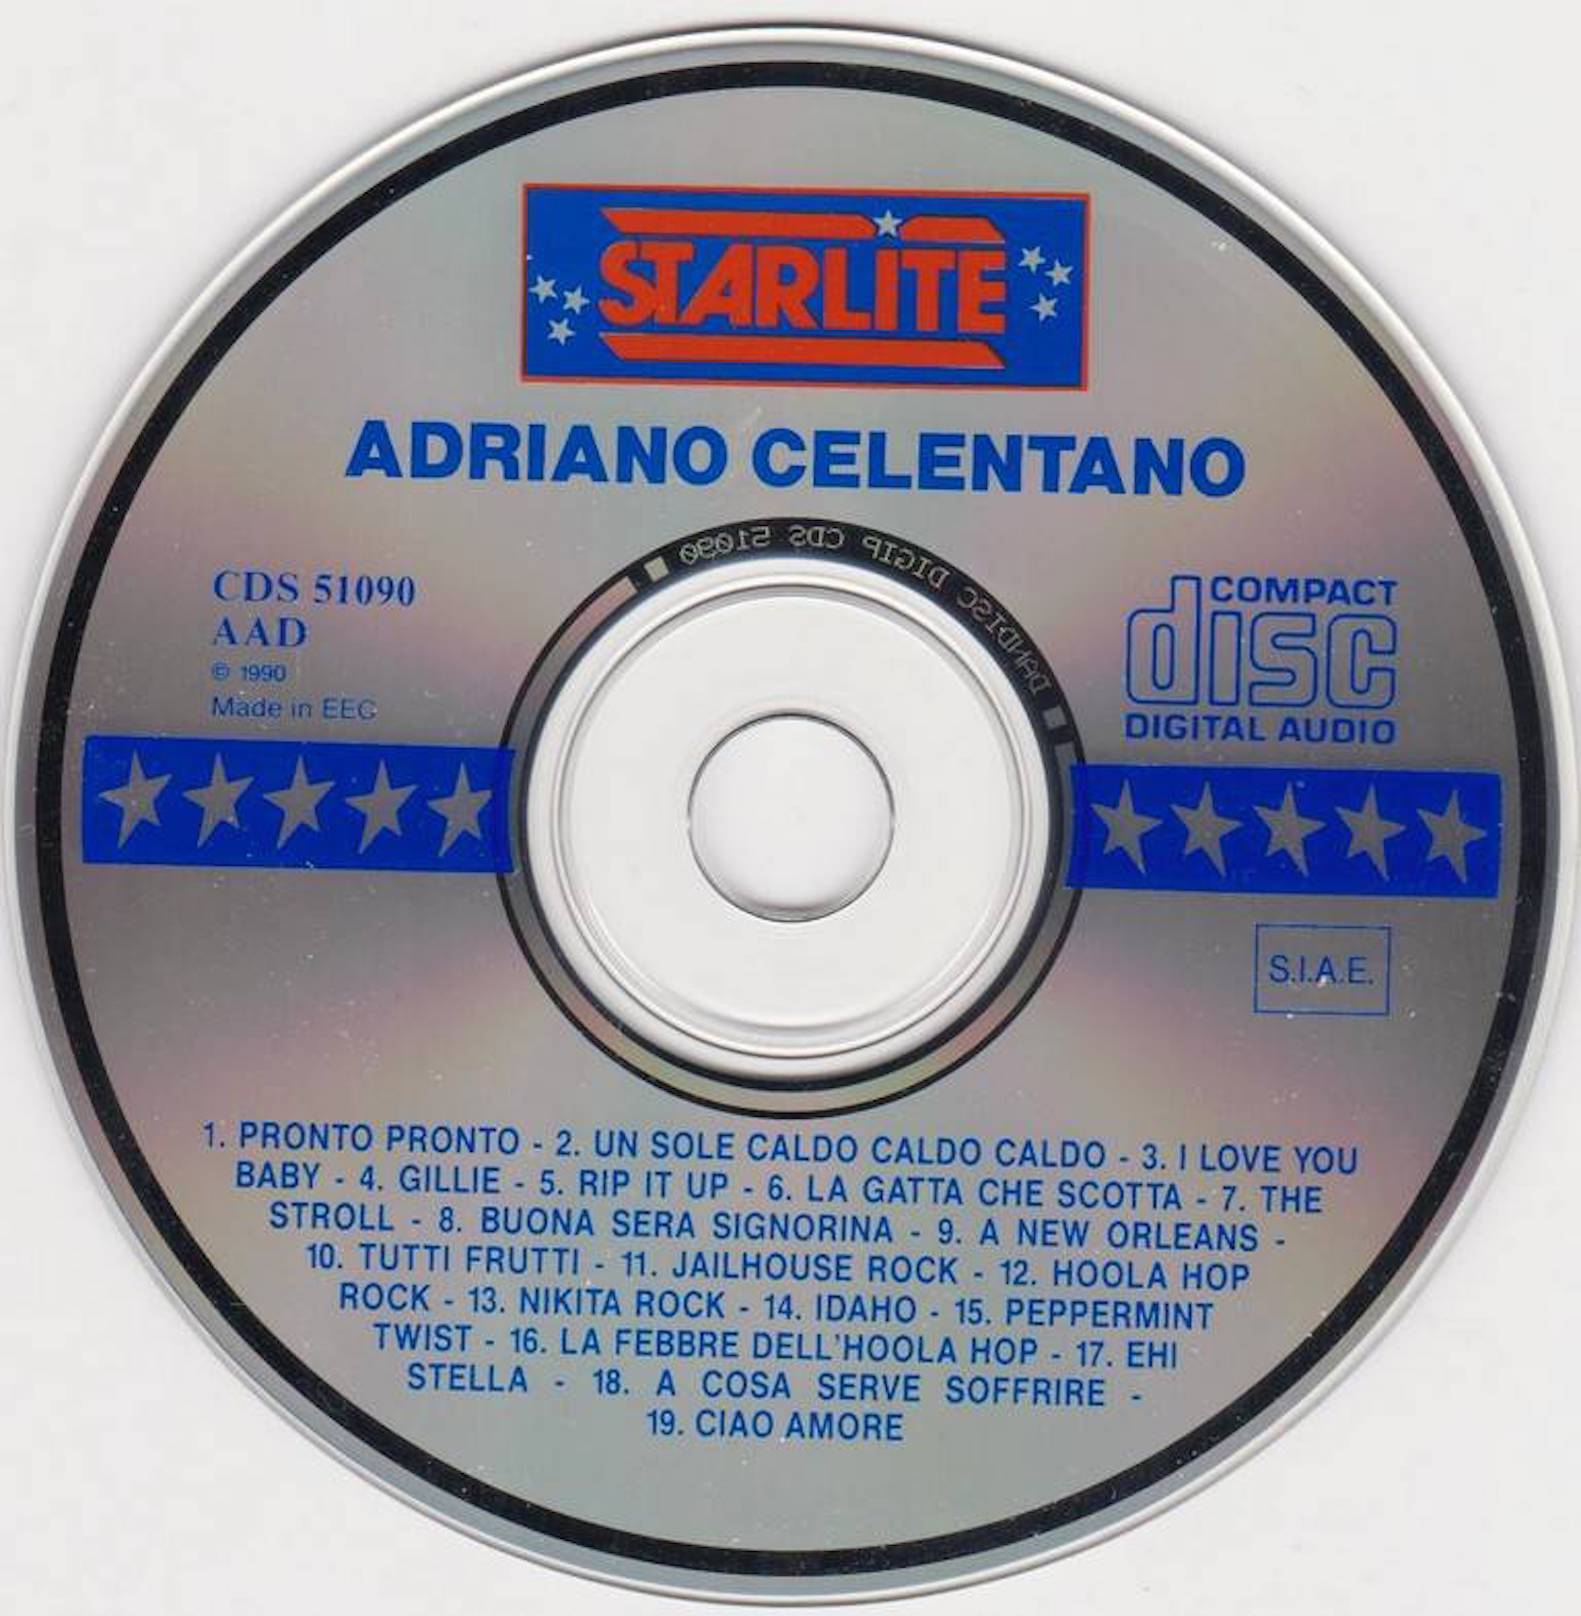 Луна итальянская песня. Адриано Челентано CD. DVD Адриано Челентано. Adriano Chelentano Greatest Hits CD обложка. Коллекция Адриано Челентано двд.